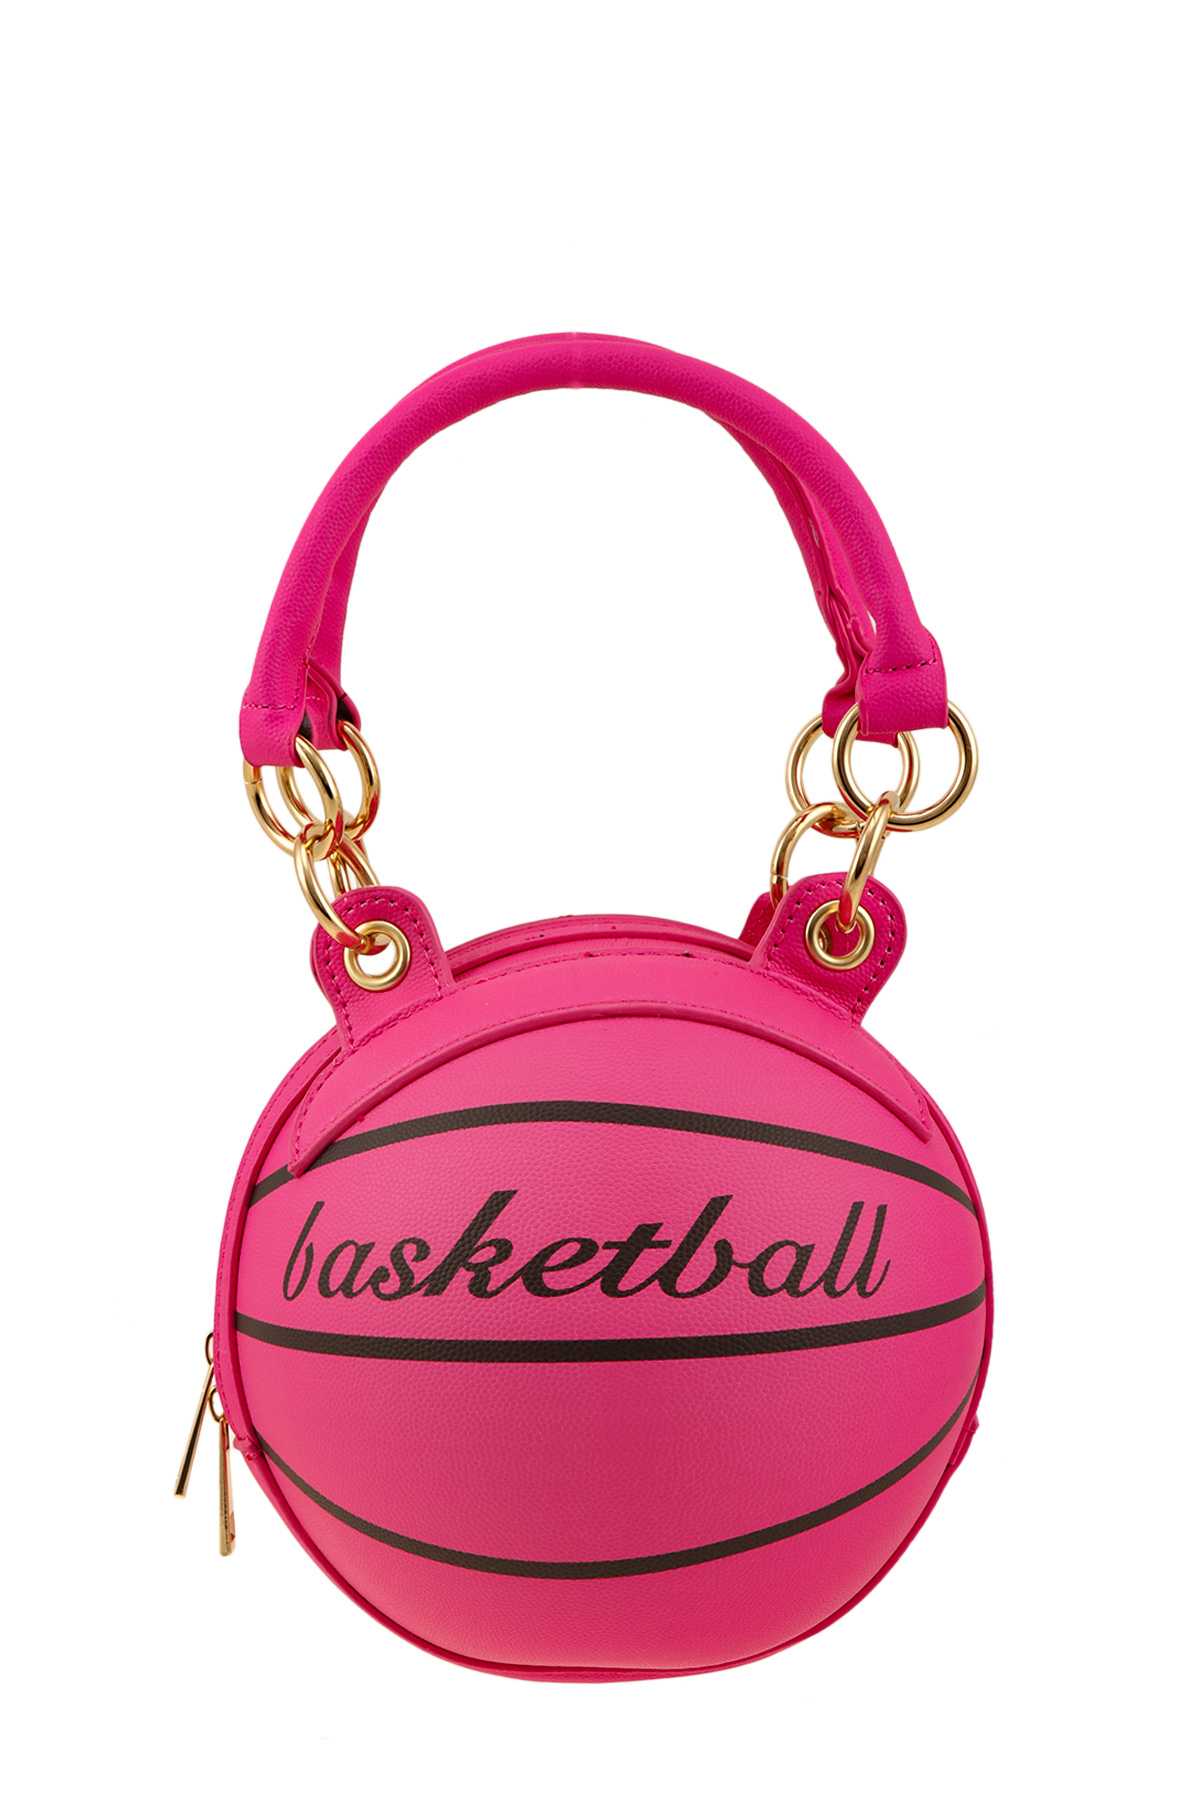 Basket Ball Shape Shoulder Bag